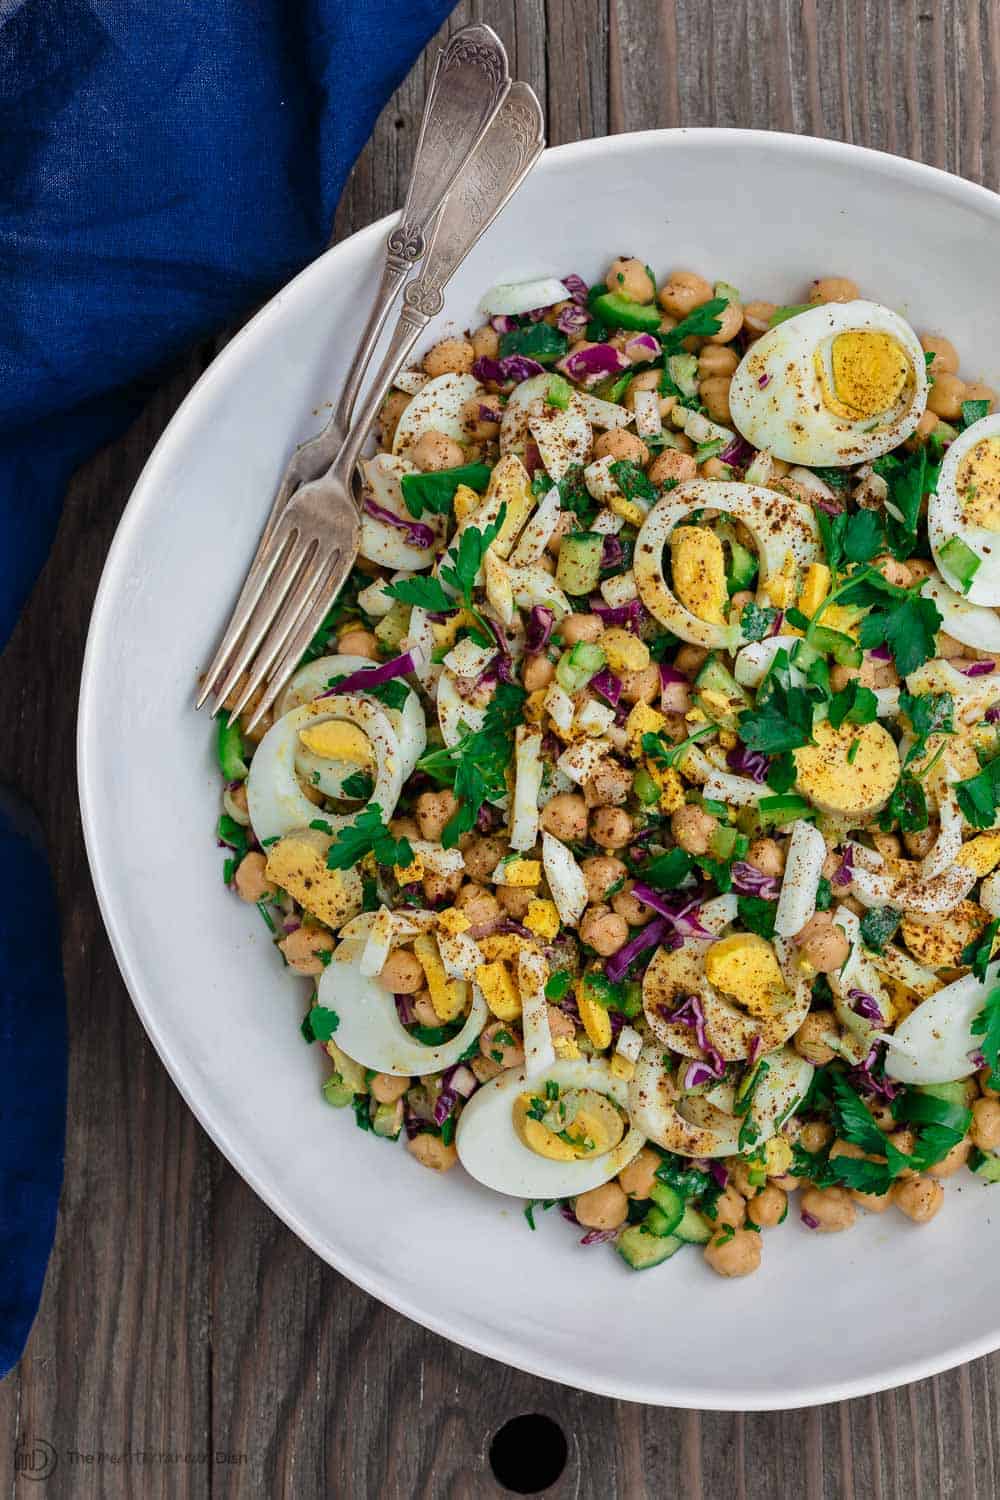 https://www.themediterraneandish.com/wp-content/uploads/2018/03/Mediterranean-Chickpea-Egg-Salad-Recipe-The-Mediterranean-Dish-1.jpg